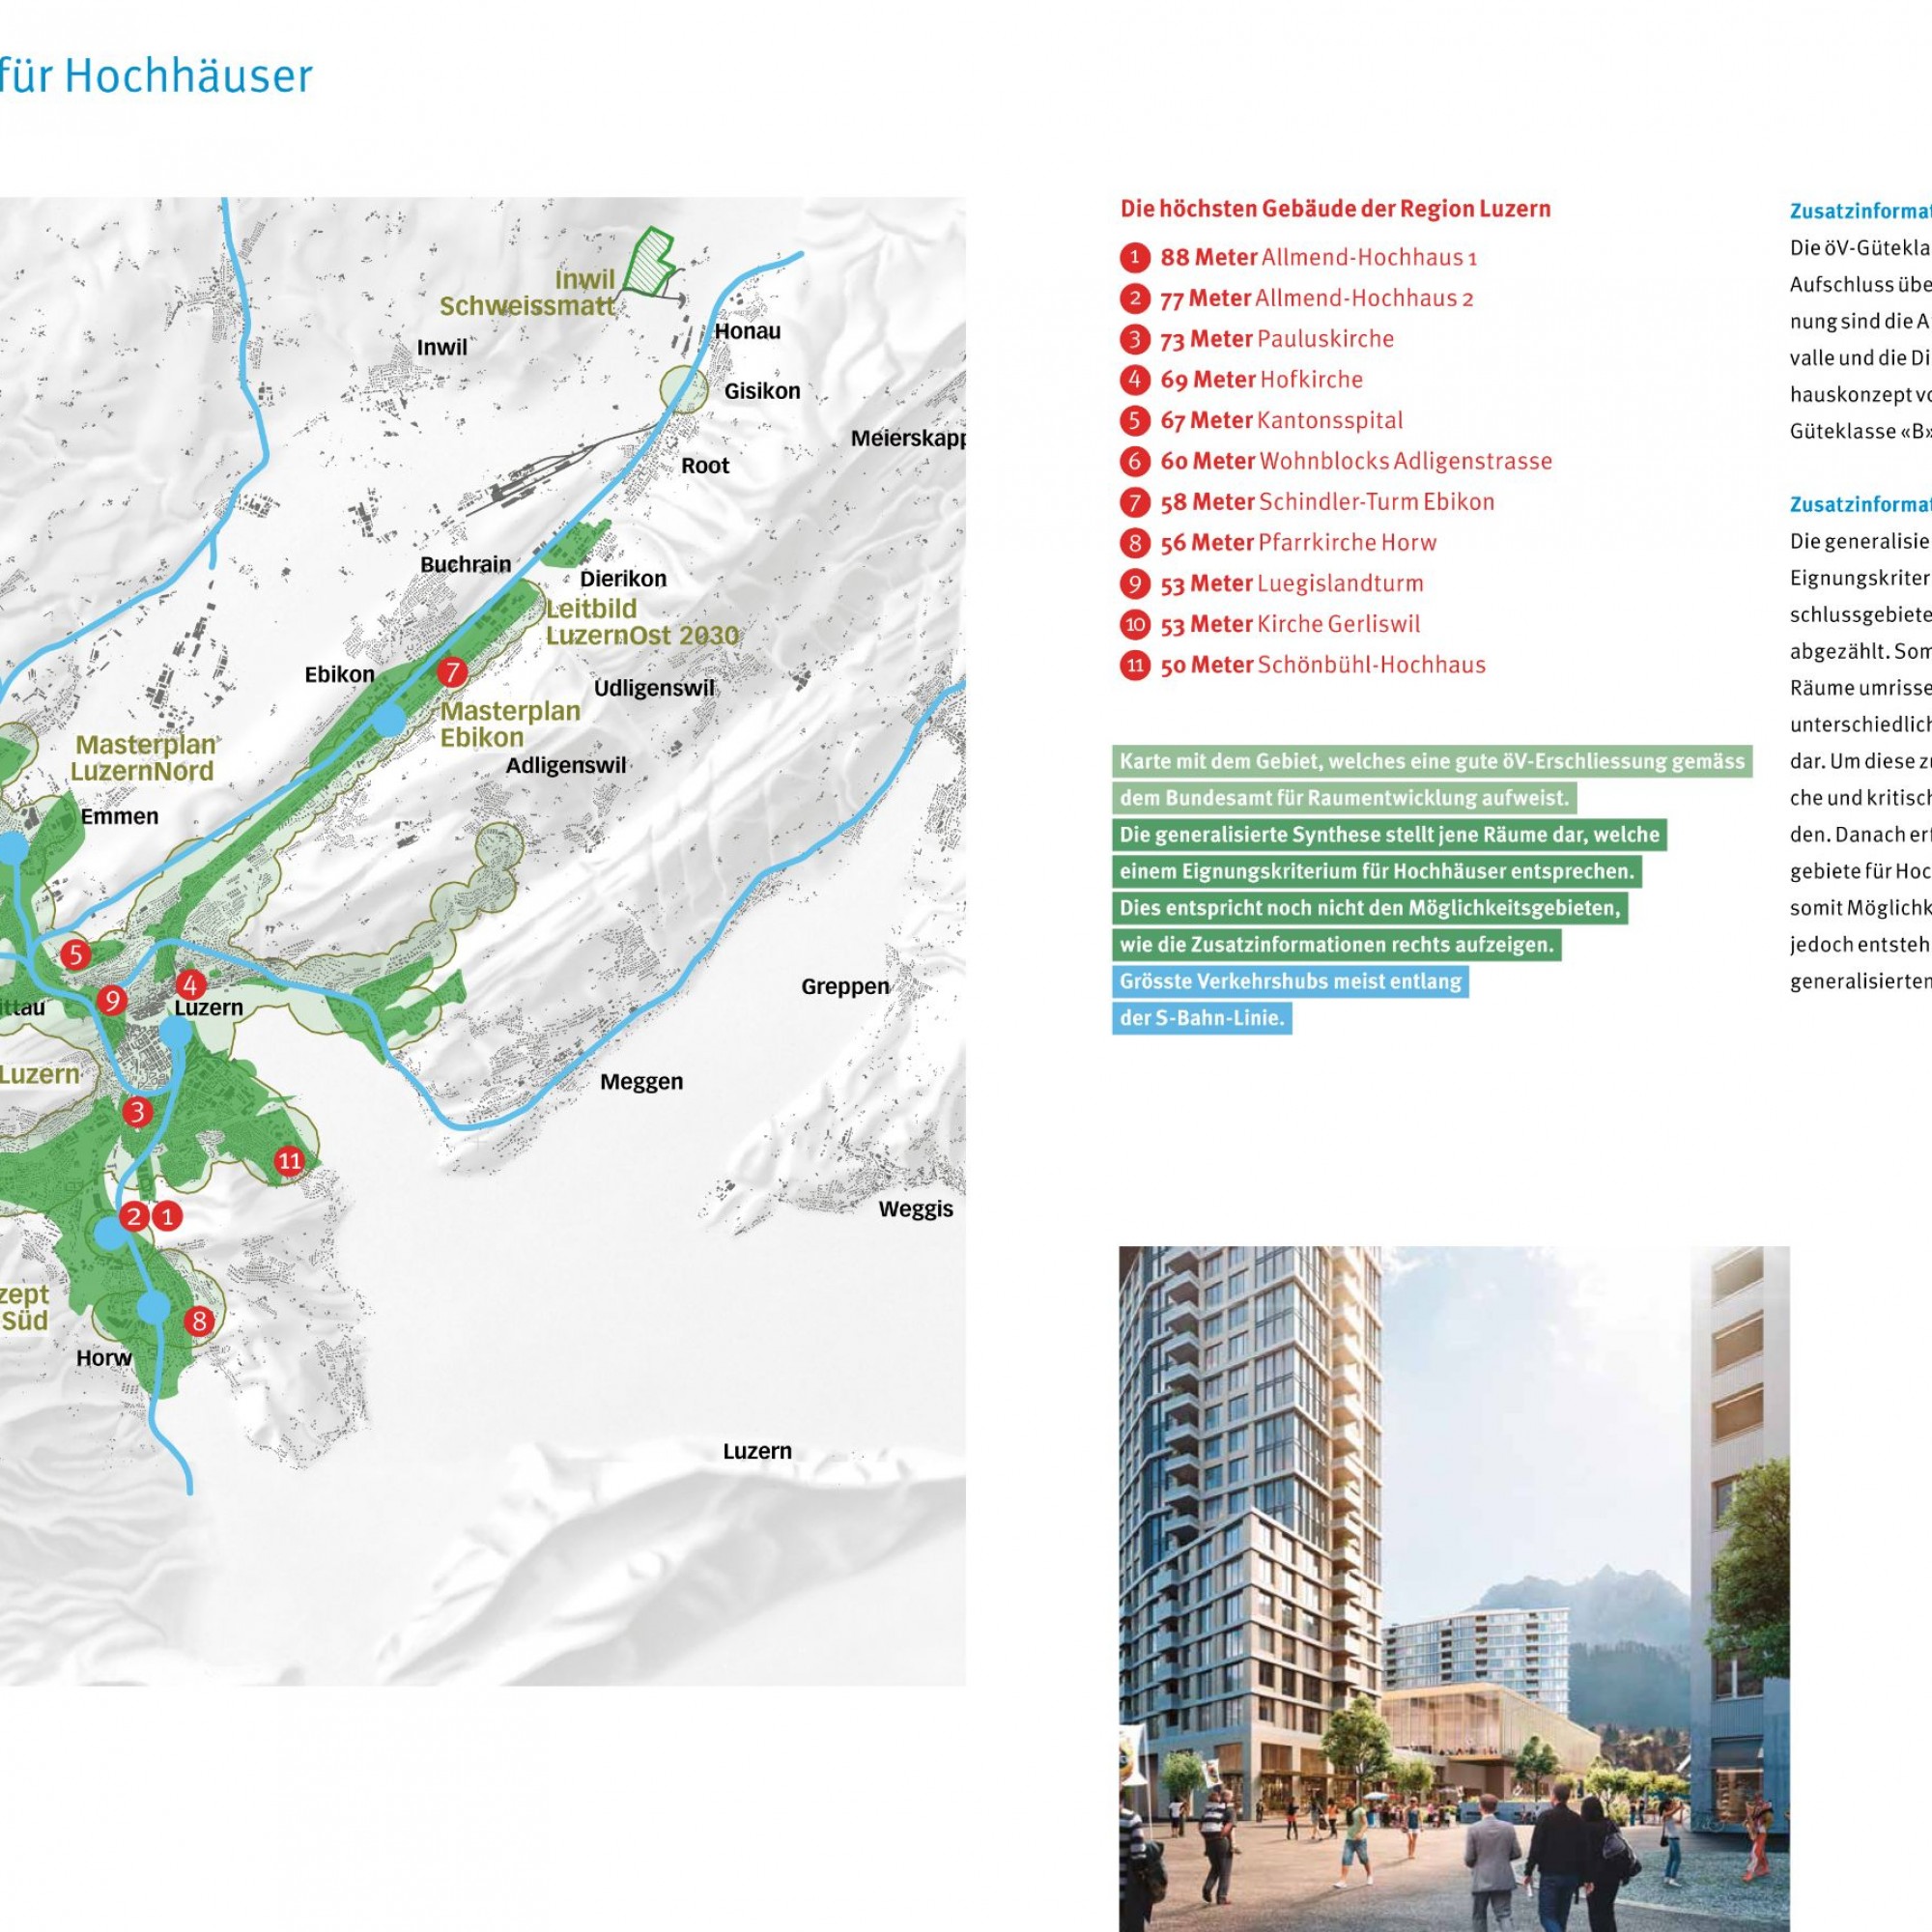 In diesen Gebieten sieht Luzern Plus Möglichkeiten für Hochhäuser, definiert als „Potenzielle Denkräume“.